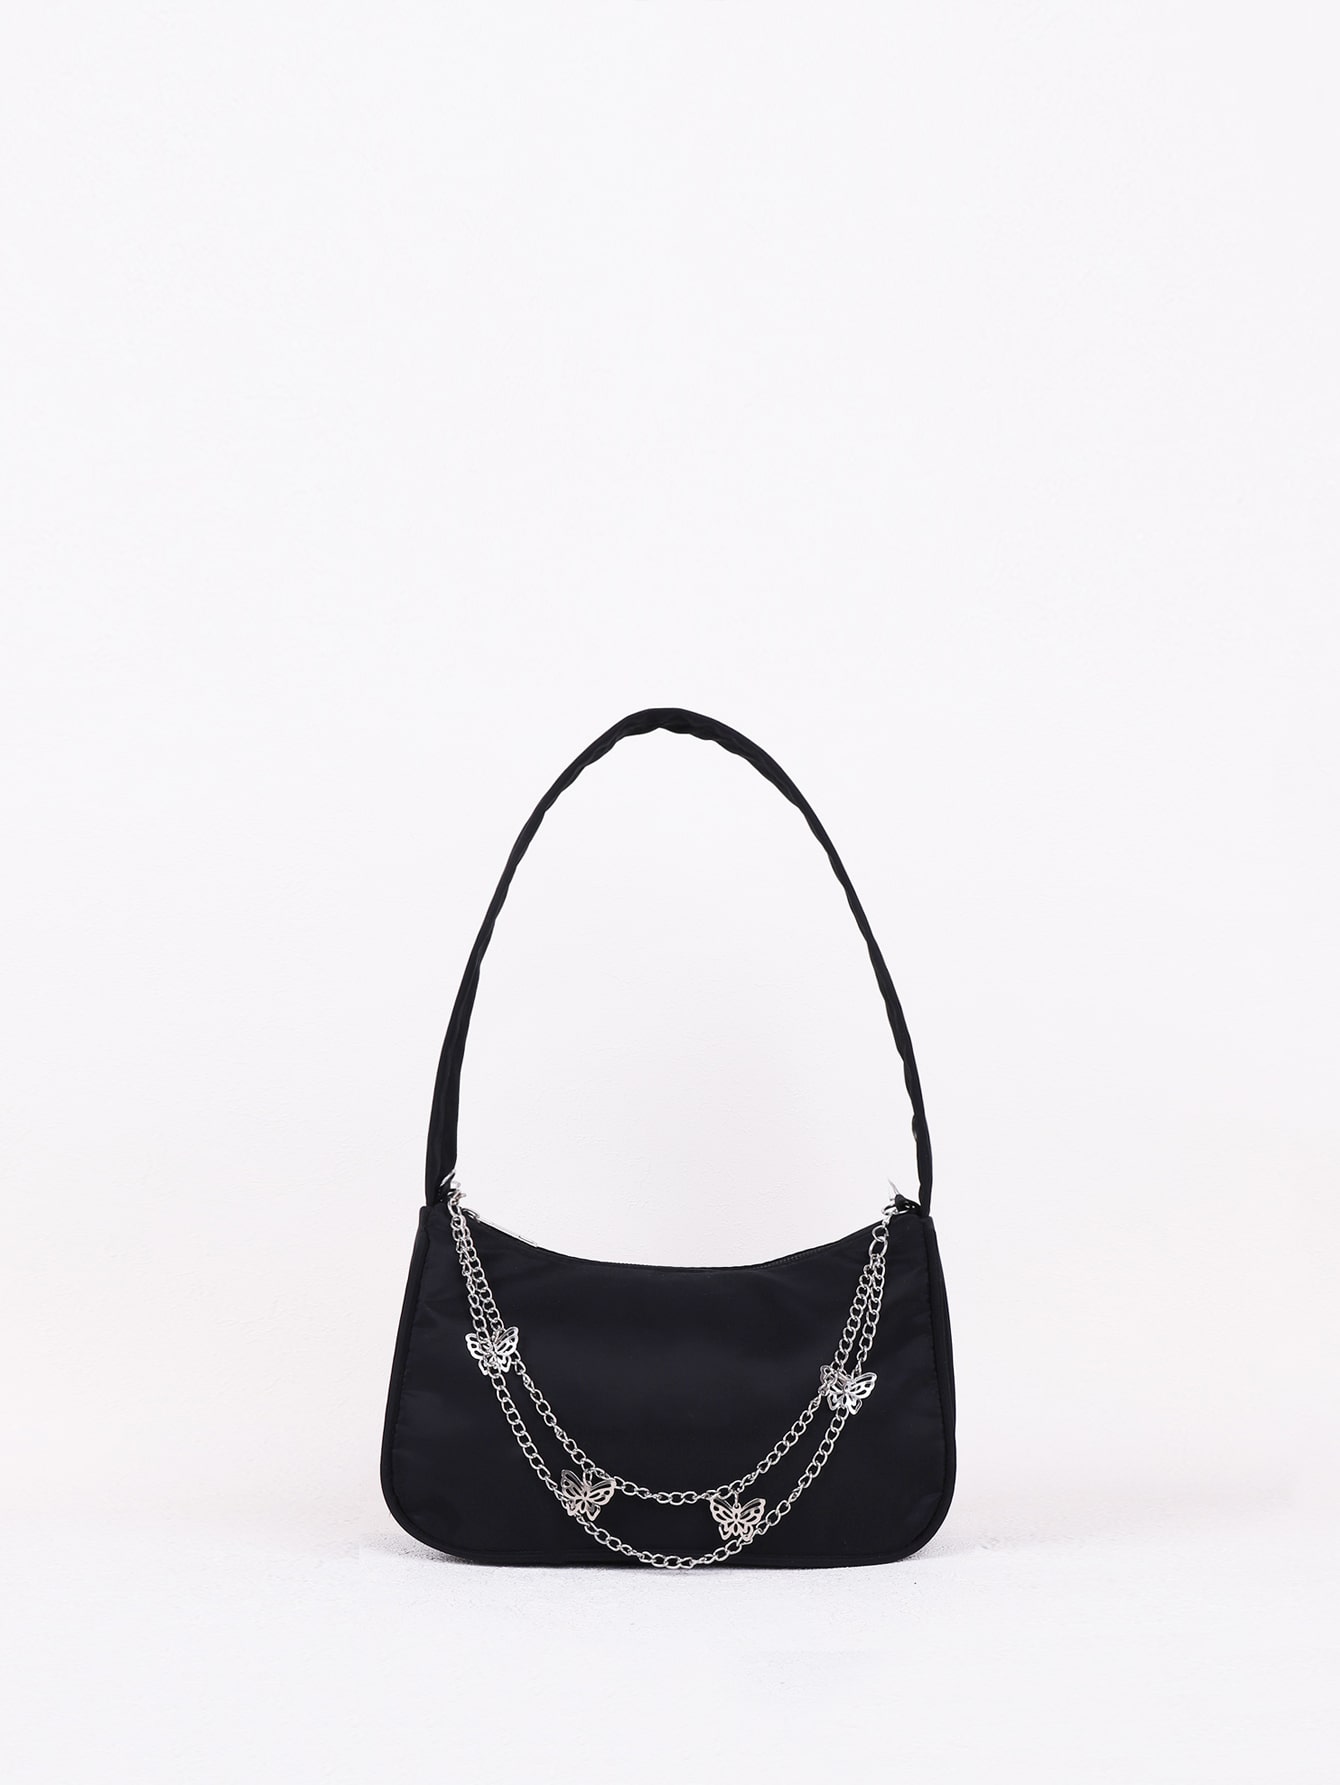 сумка moveli baguette new черный янтарь 1 шт Модная однотонная сумка на плечо в стиле цепочки, черный